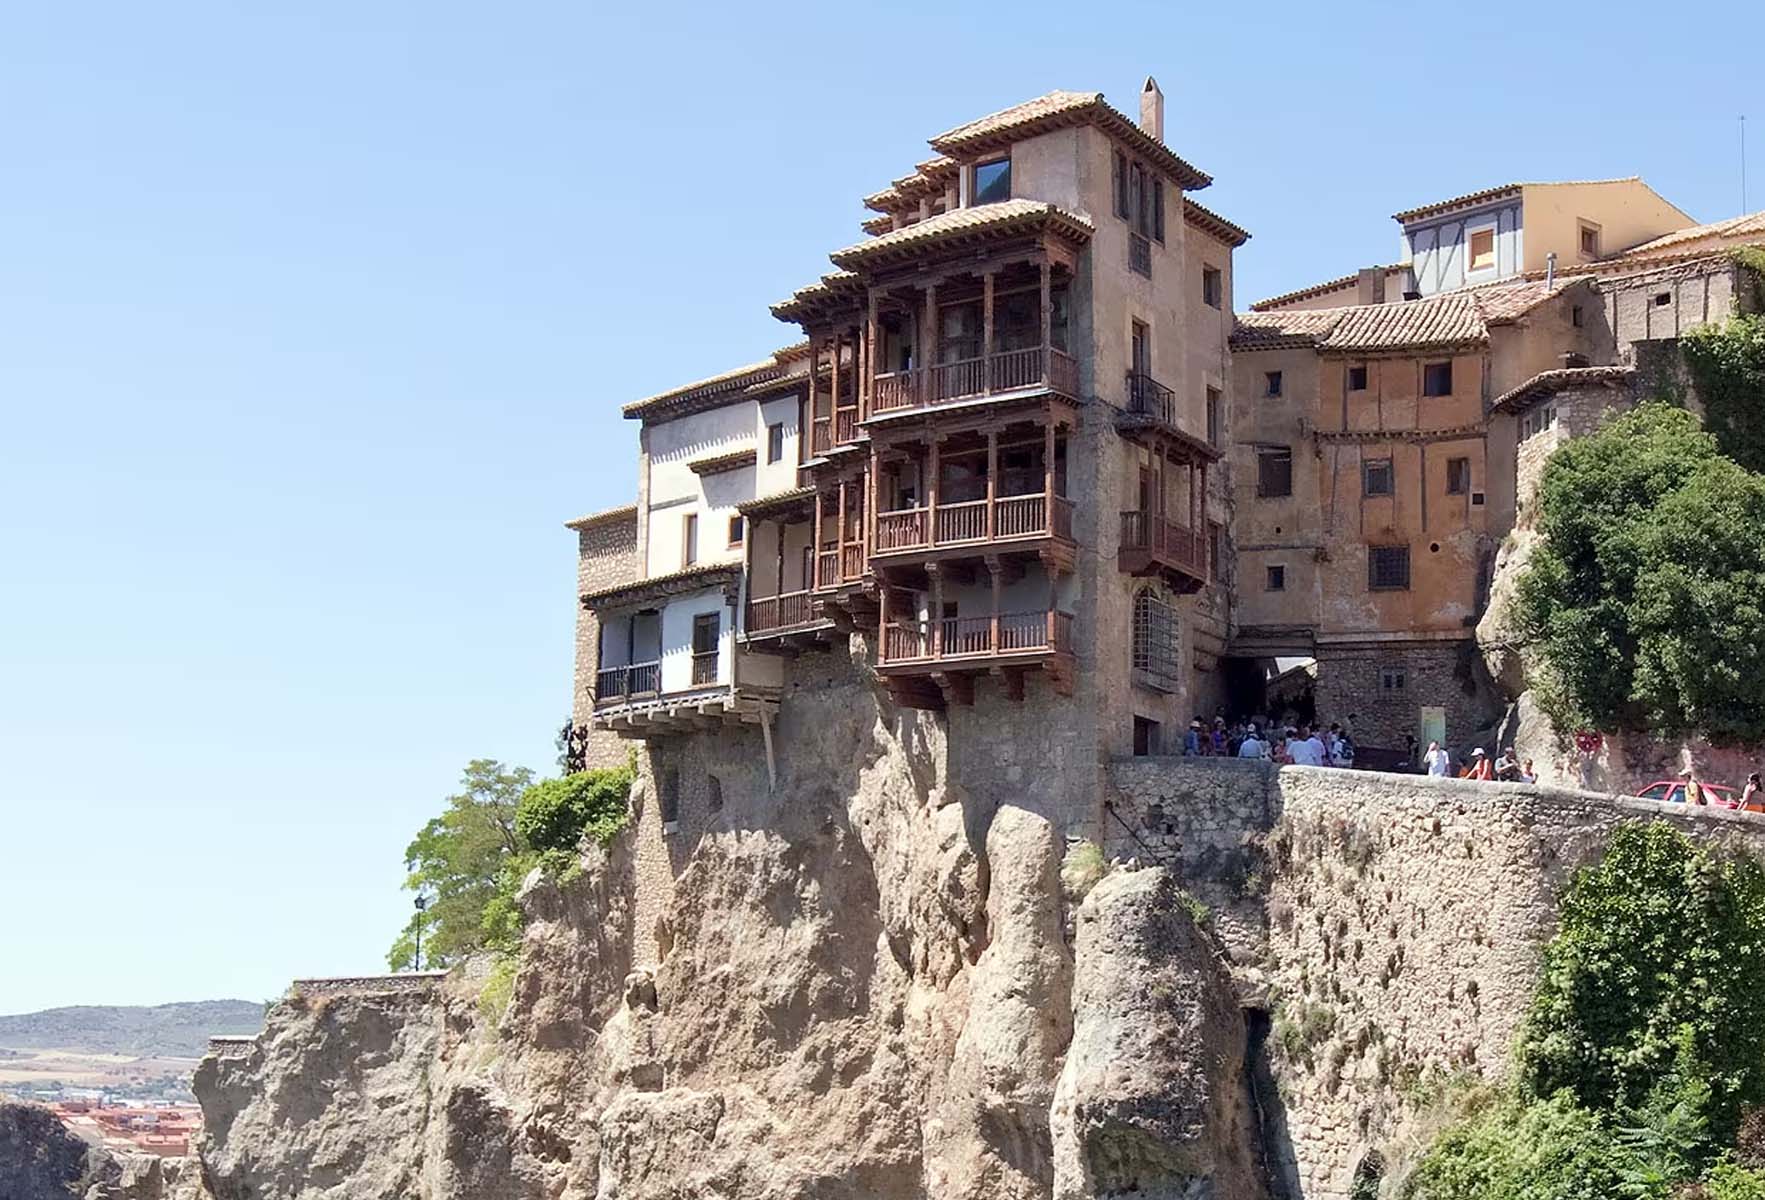 The Hanging Houses Of Cuenca – Casas Colgadas